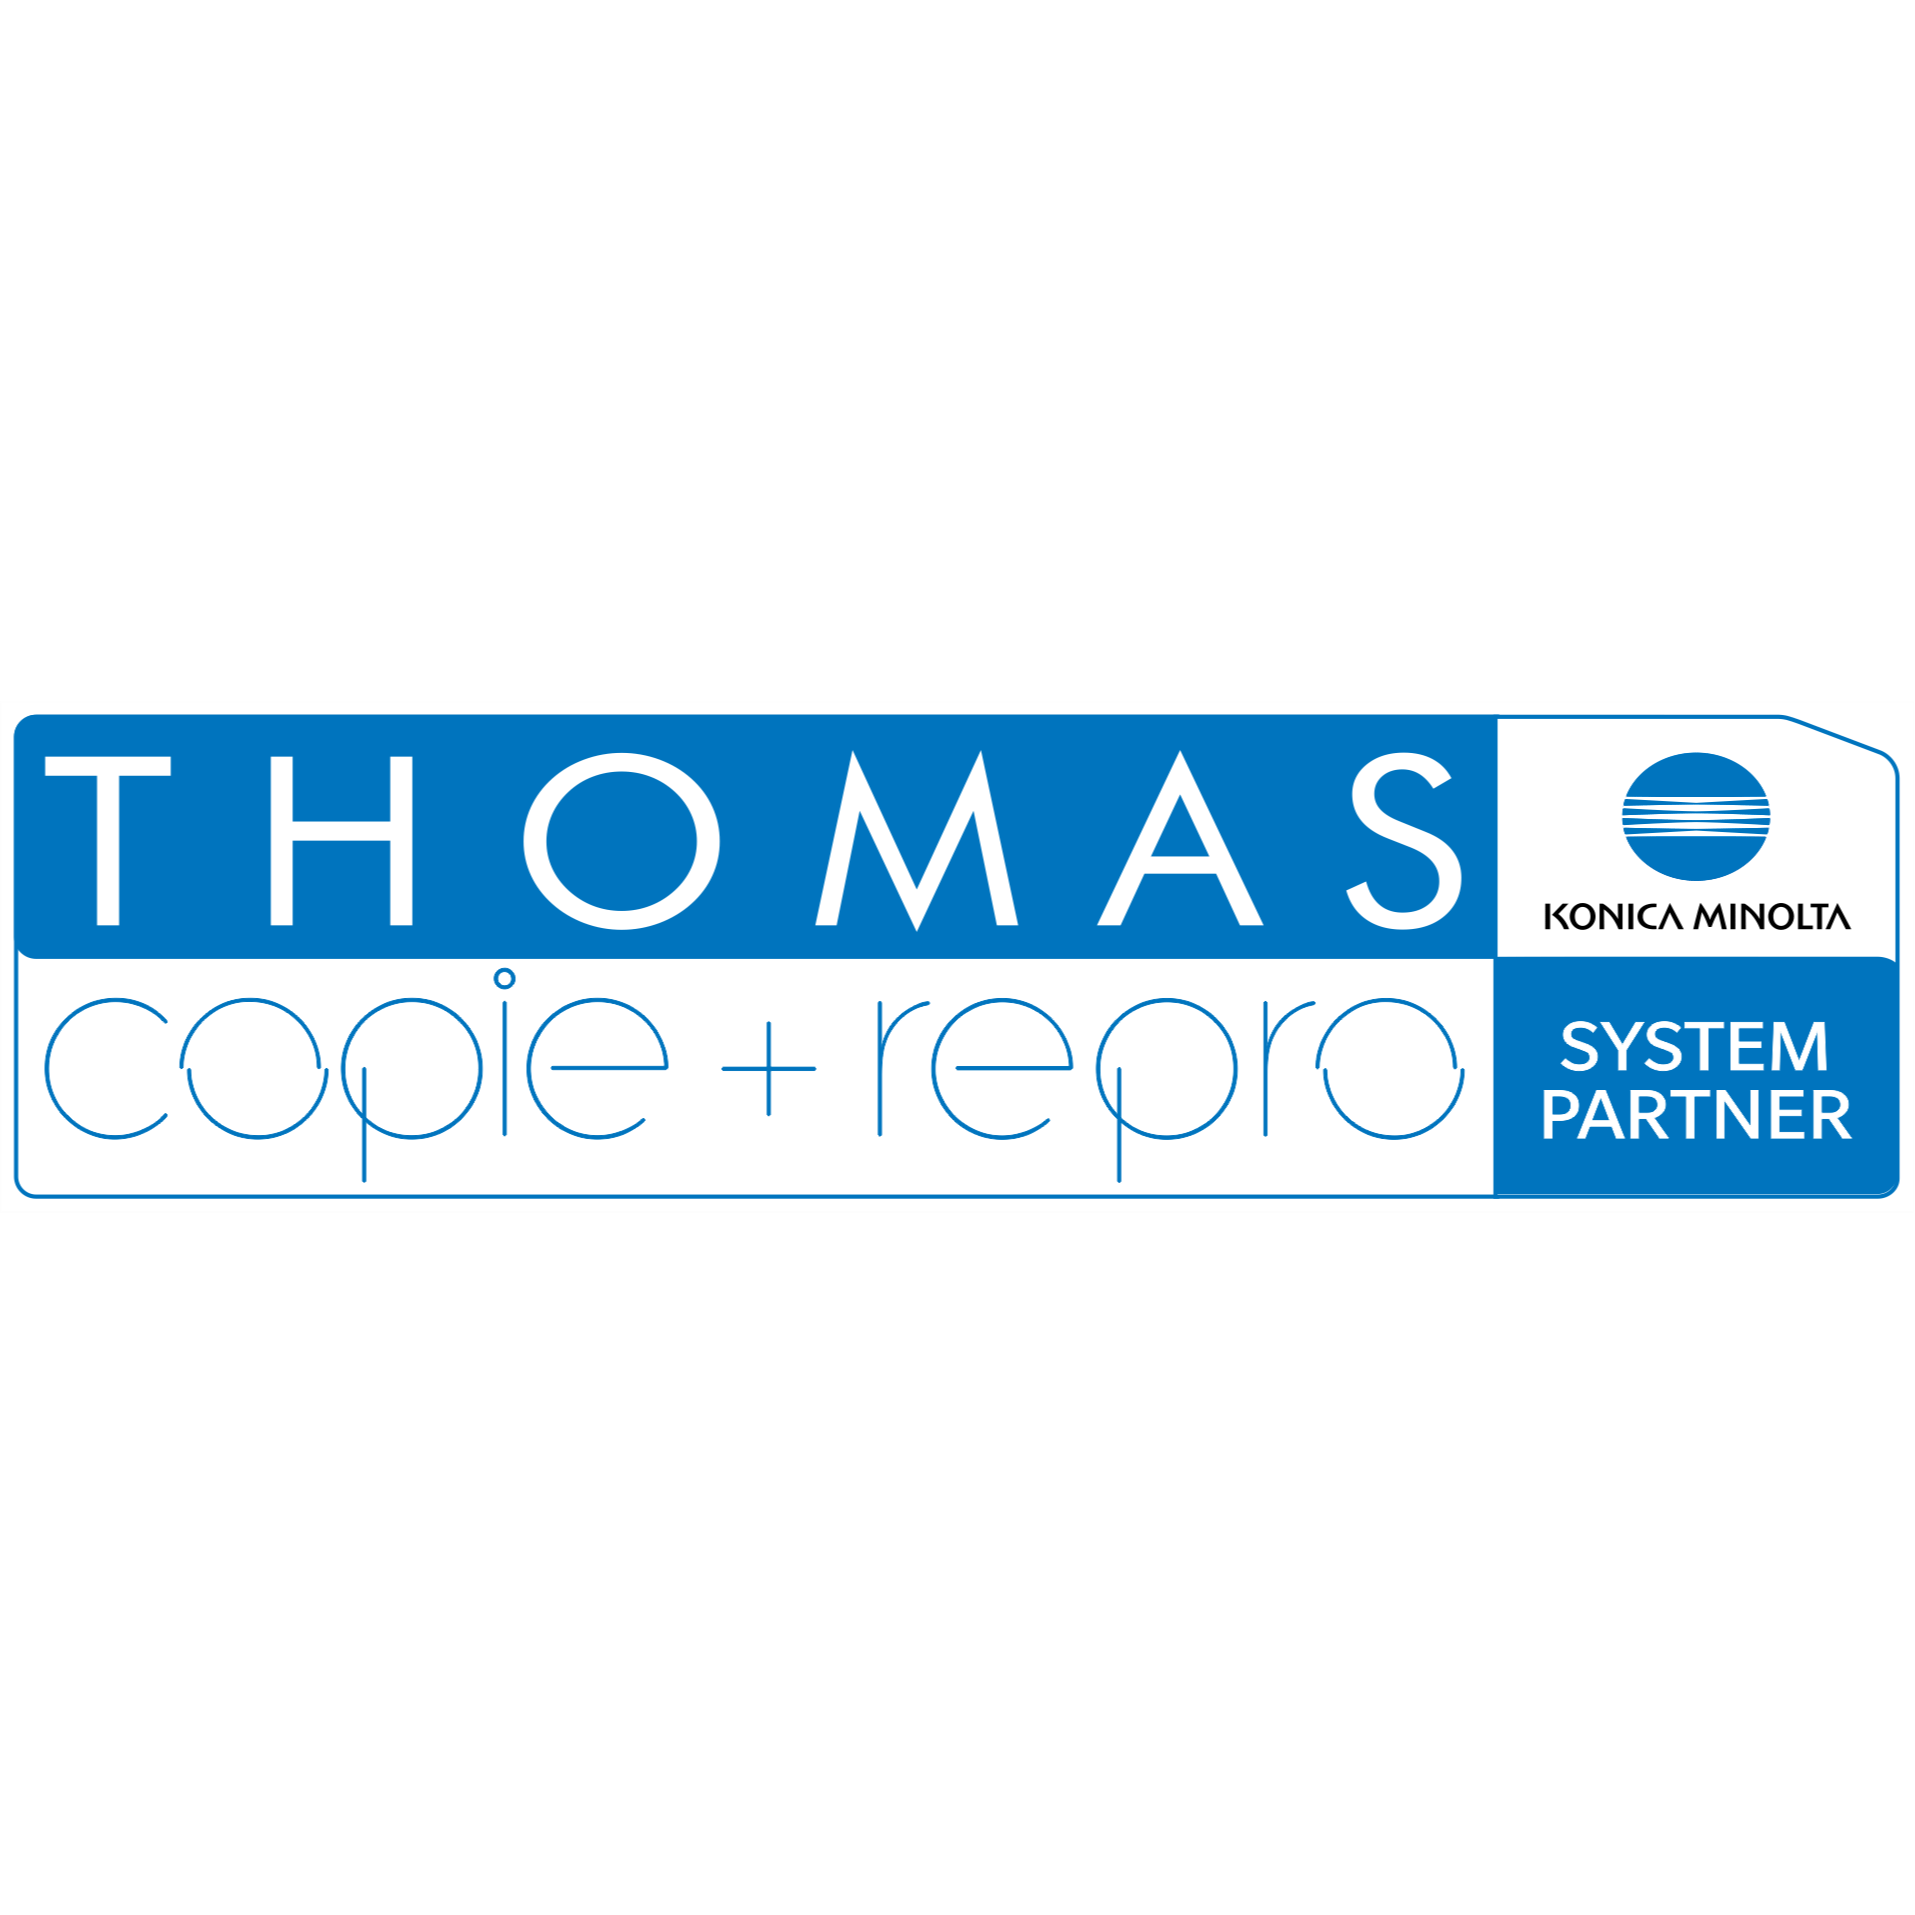 THOMAS copie + repro e.K. | Copyshop | Druck-, Scan- und Kopierdienstleistungen Logo